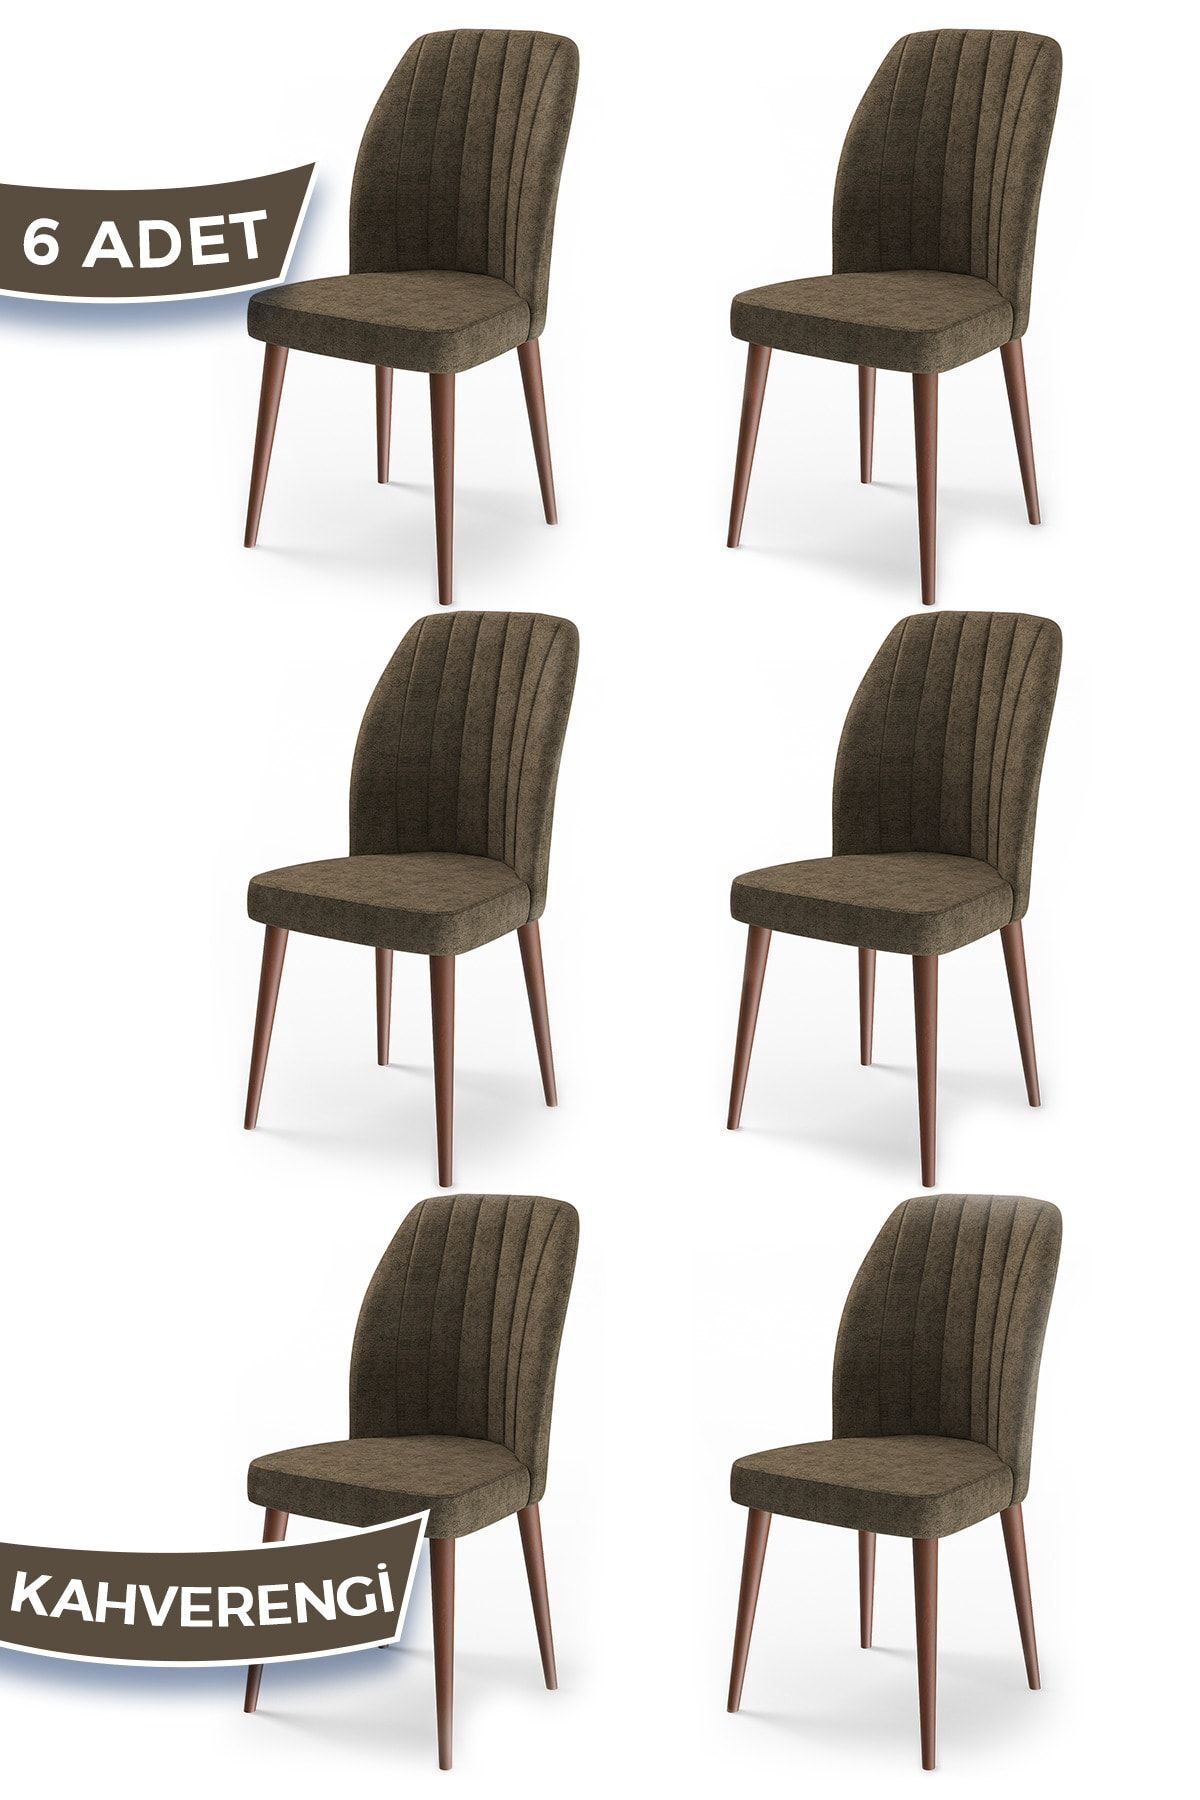 Canisa Concept Etra Serisi Ahşap Gürgen Ayaklı 1.sınıf 6 Adet Sandalye/renk Kahverengi Ayaklar Ceviz